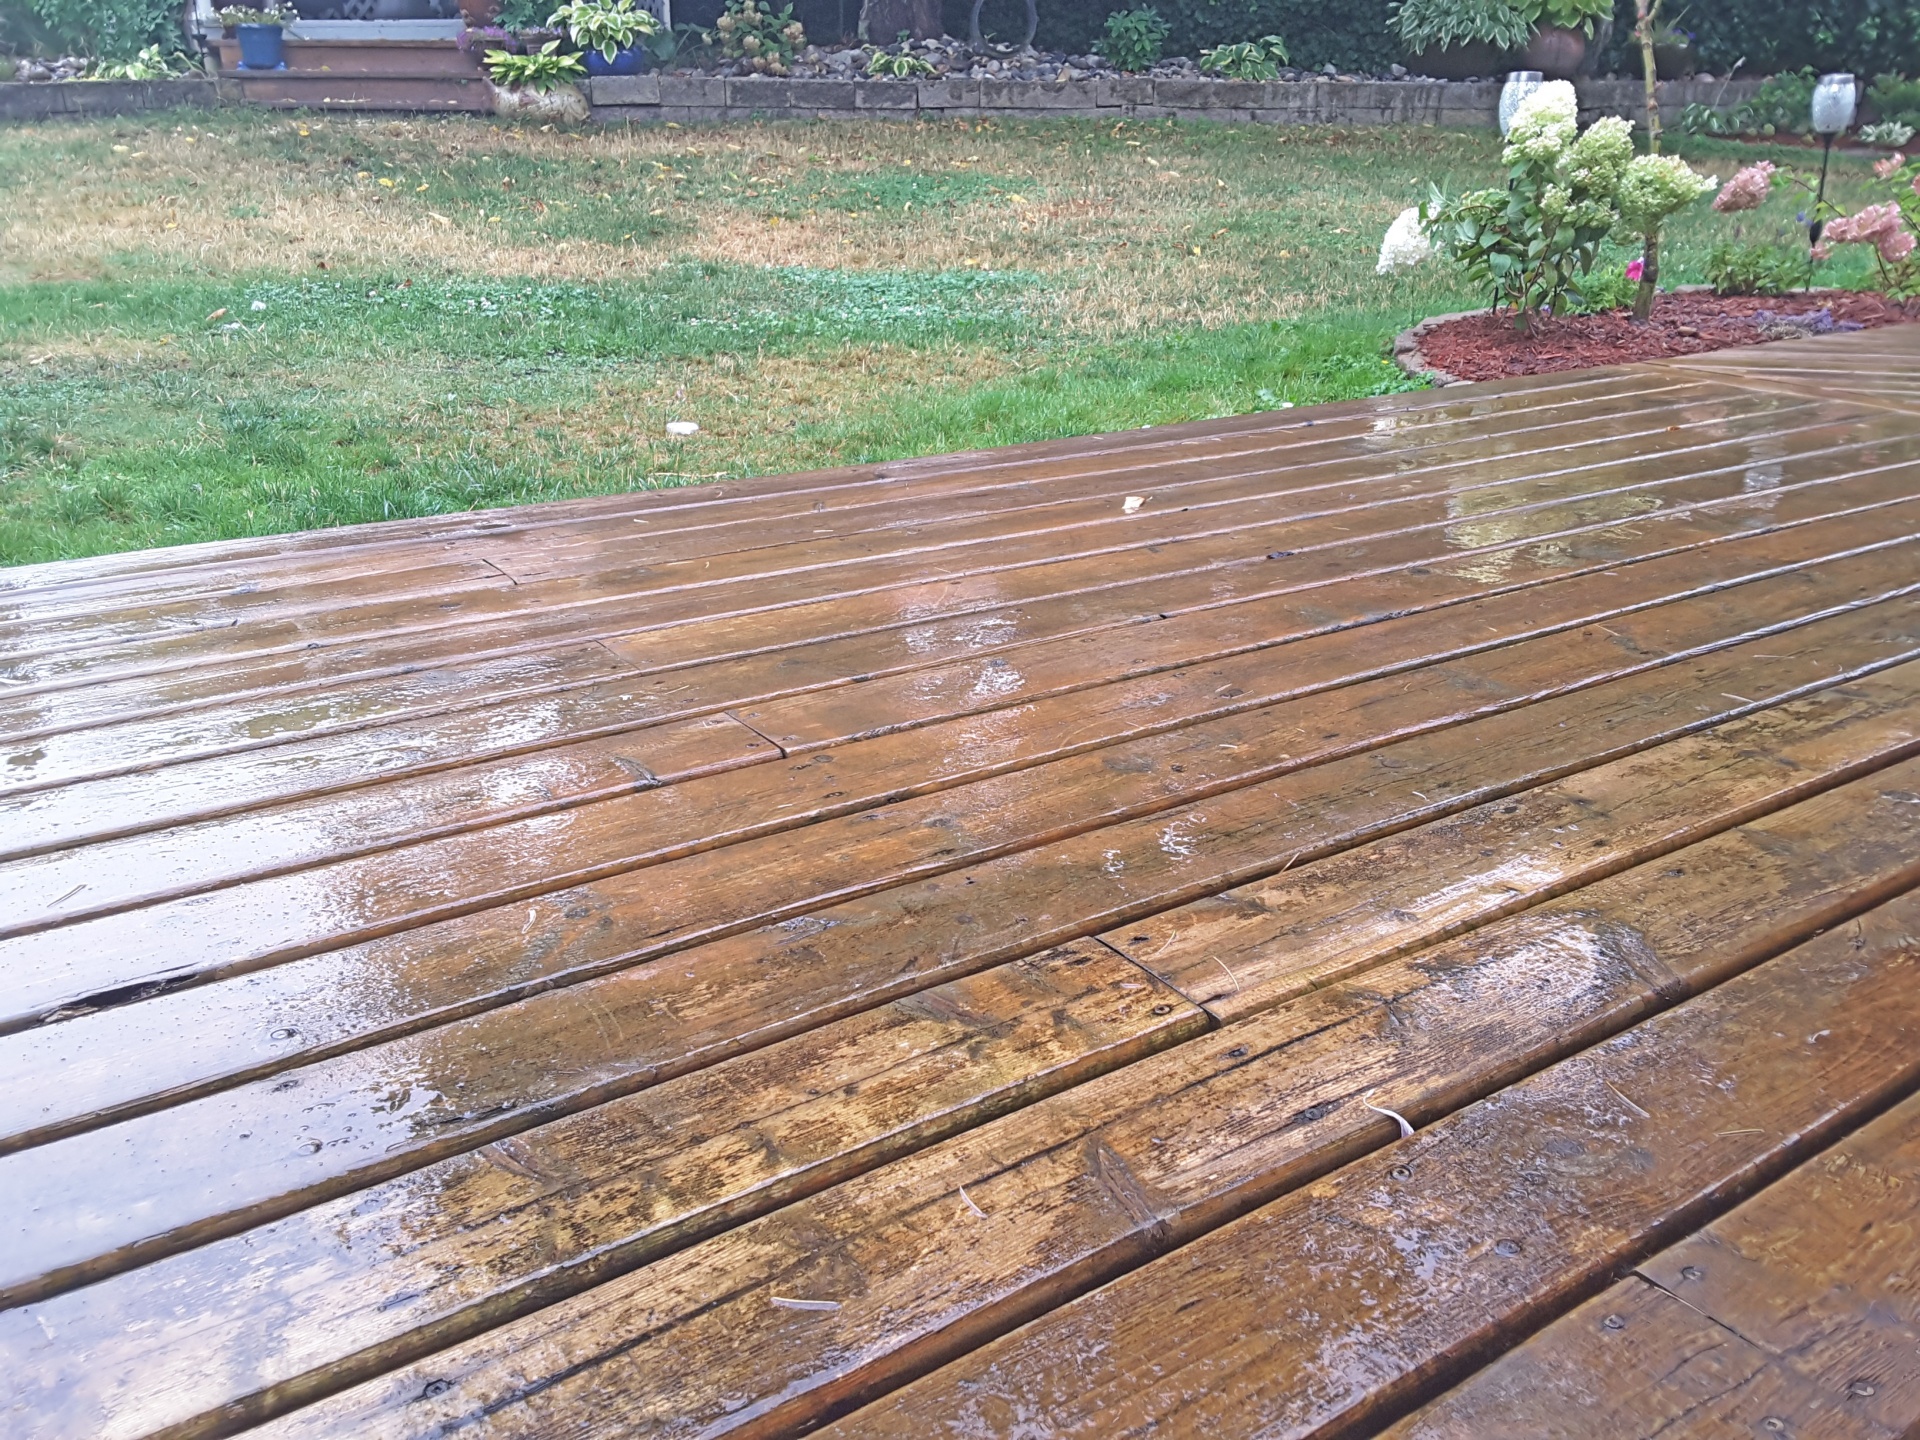 Wet wooden decking in a grassy garden